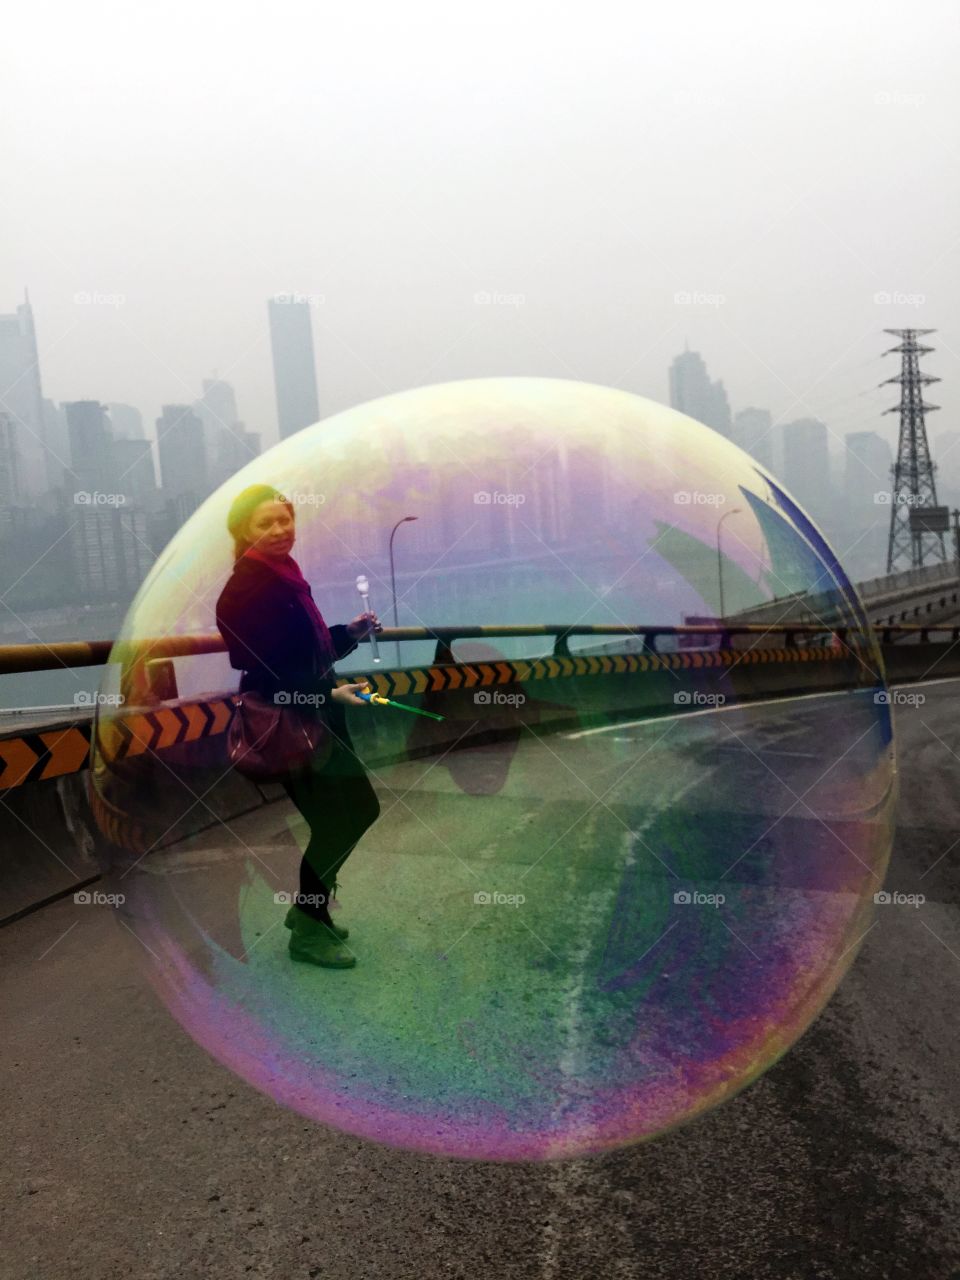 Inside a bubble